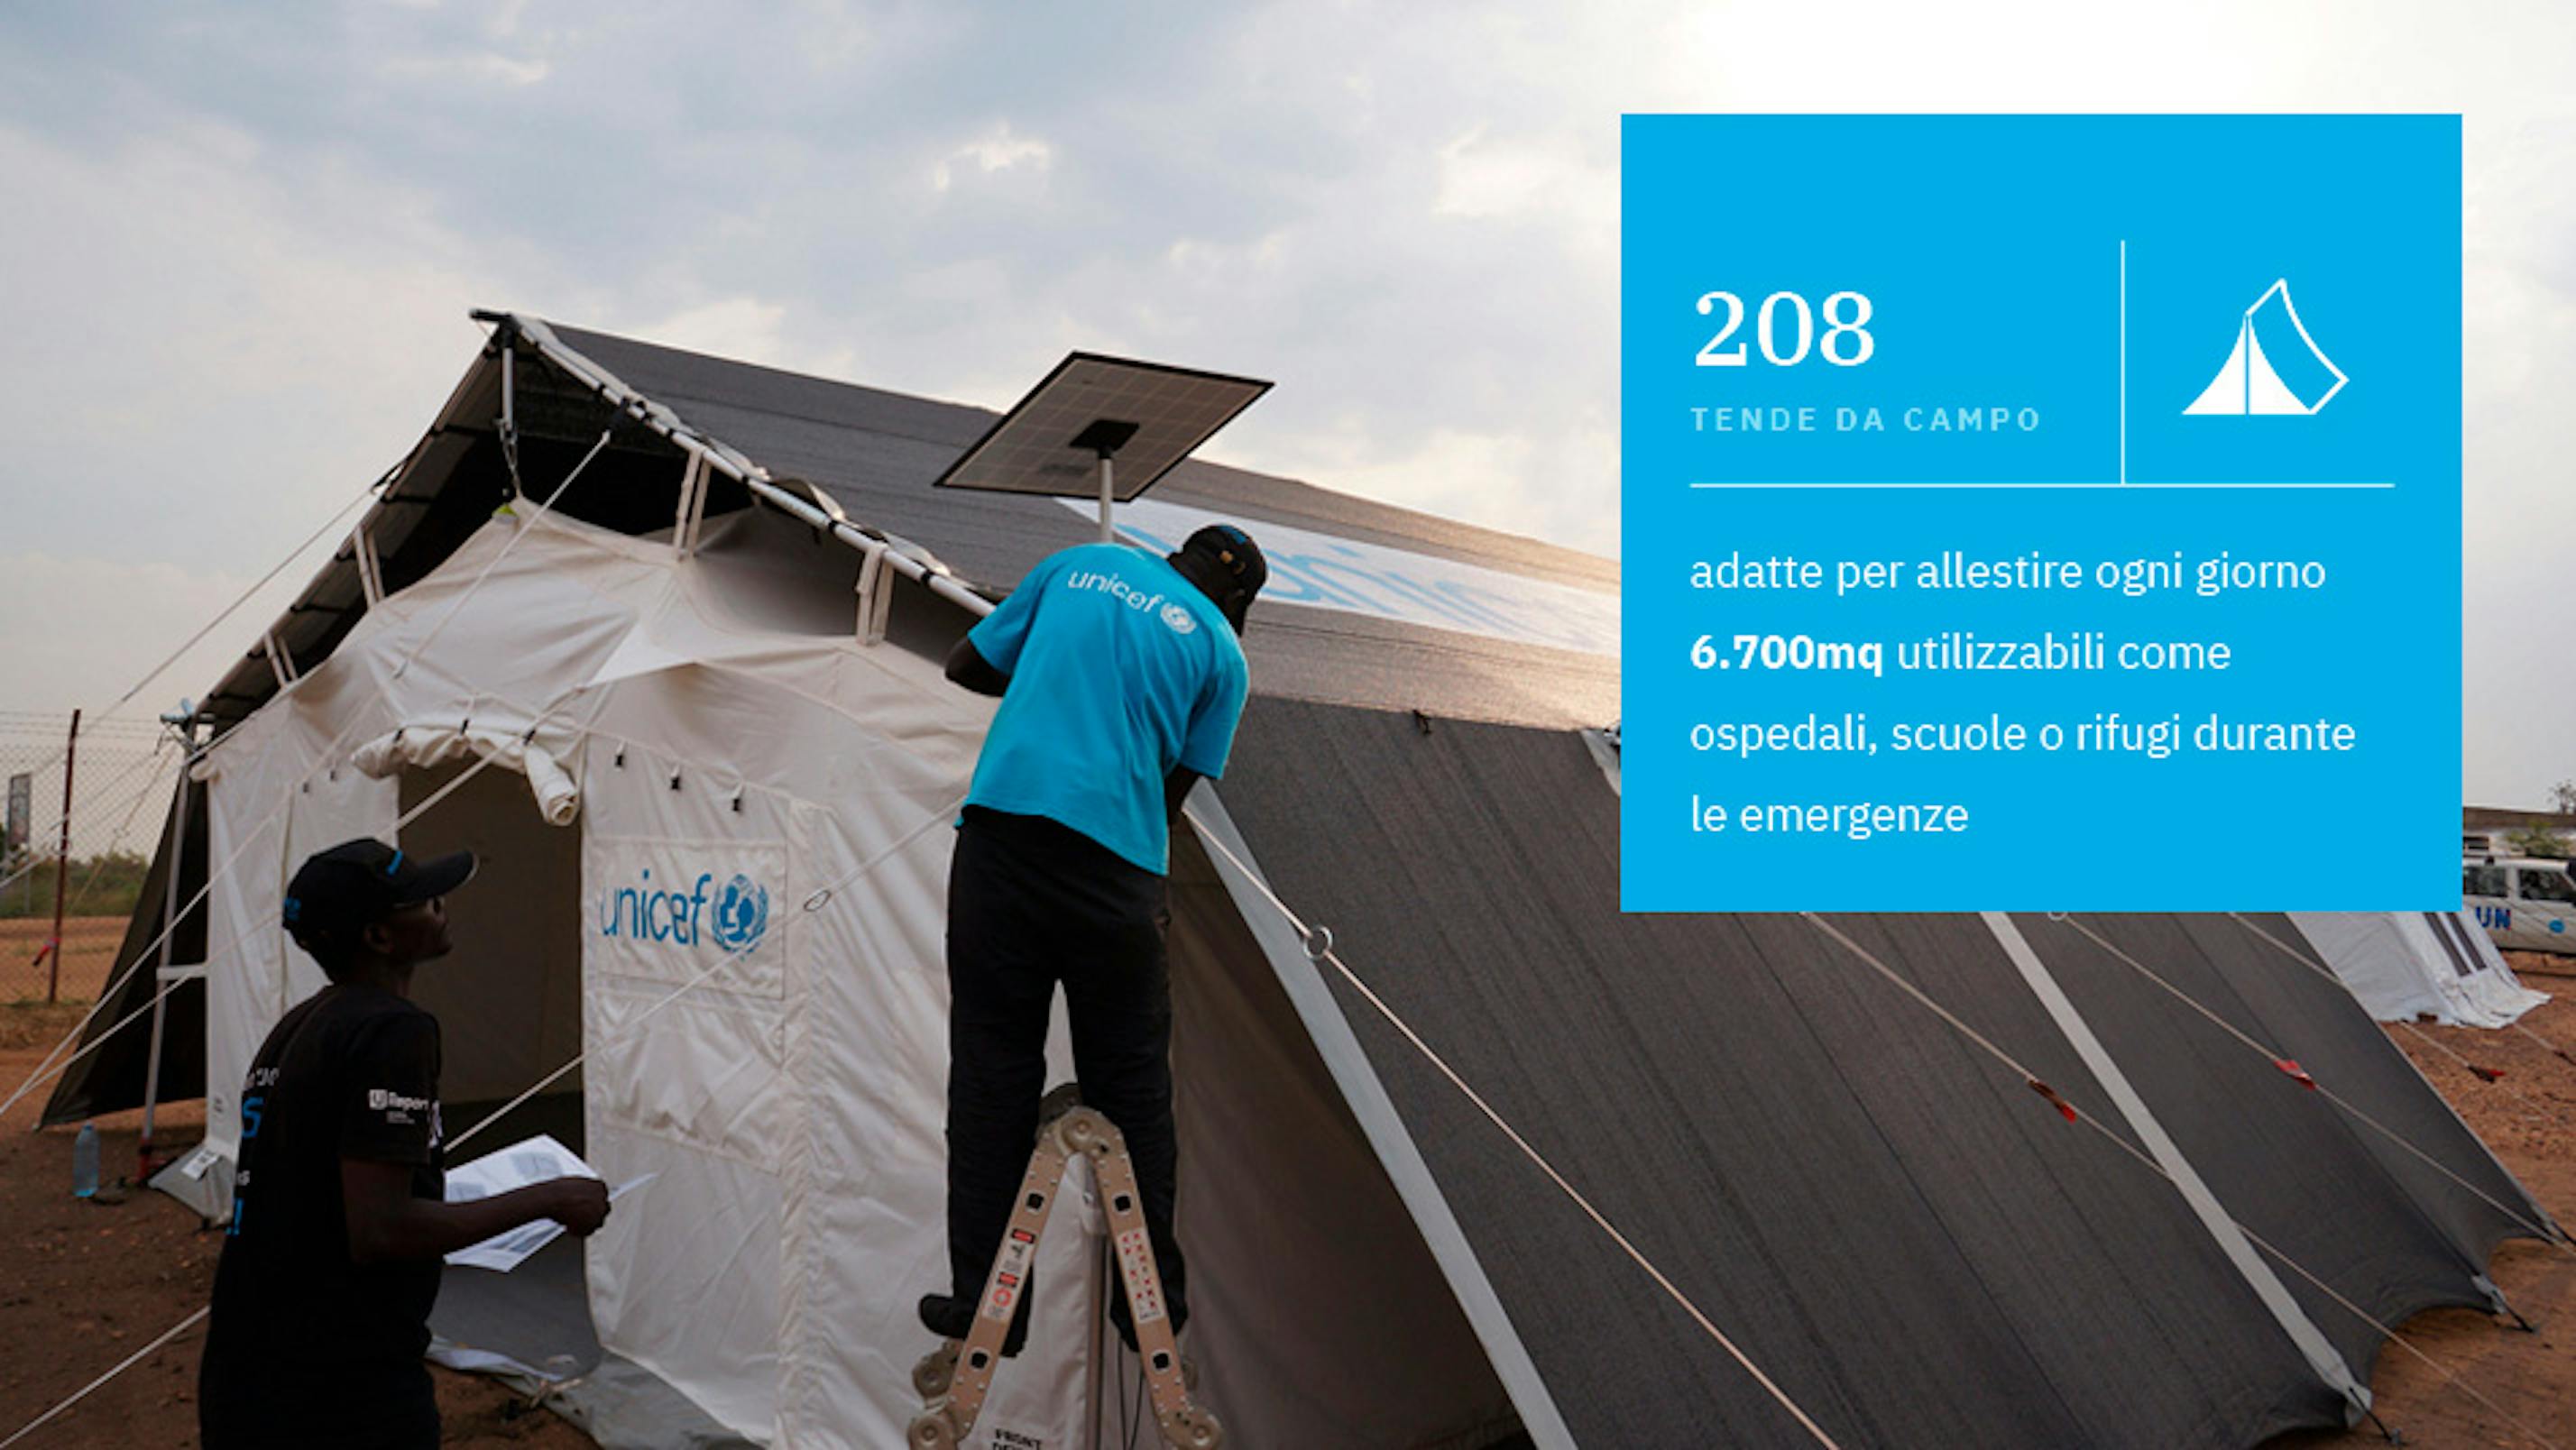 Ogni giorno l'UNICEF Italia ha raccolto 237.534 euro, l'equivalente di 208 tende da campo